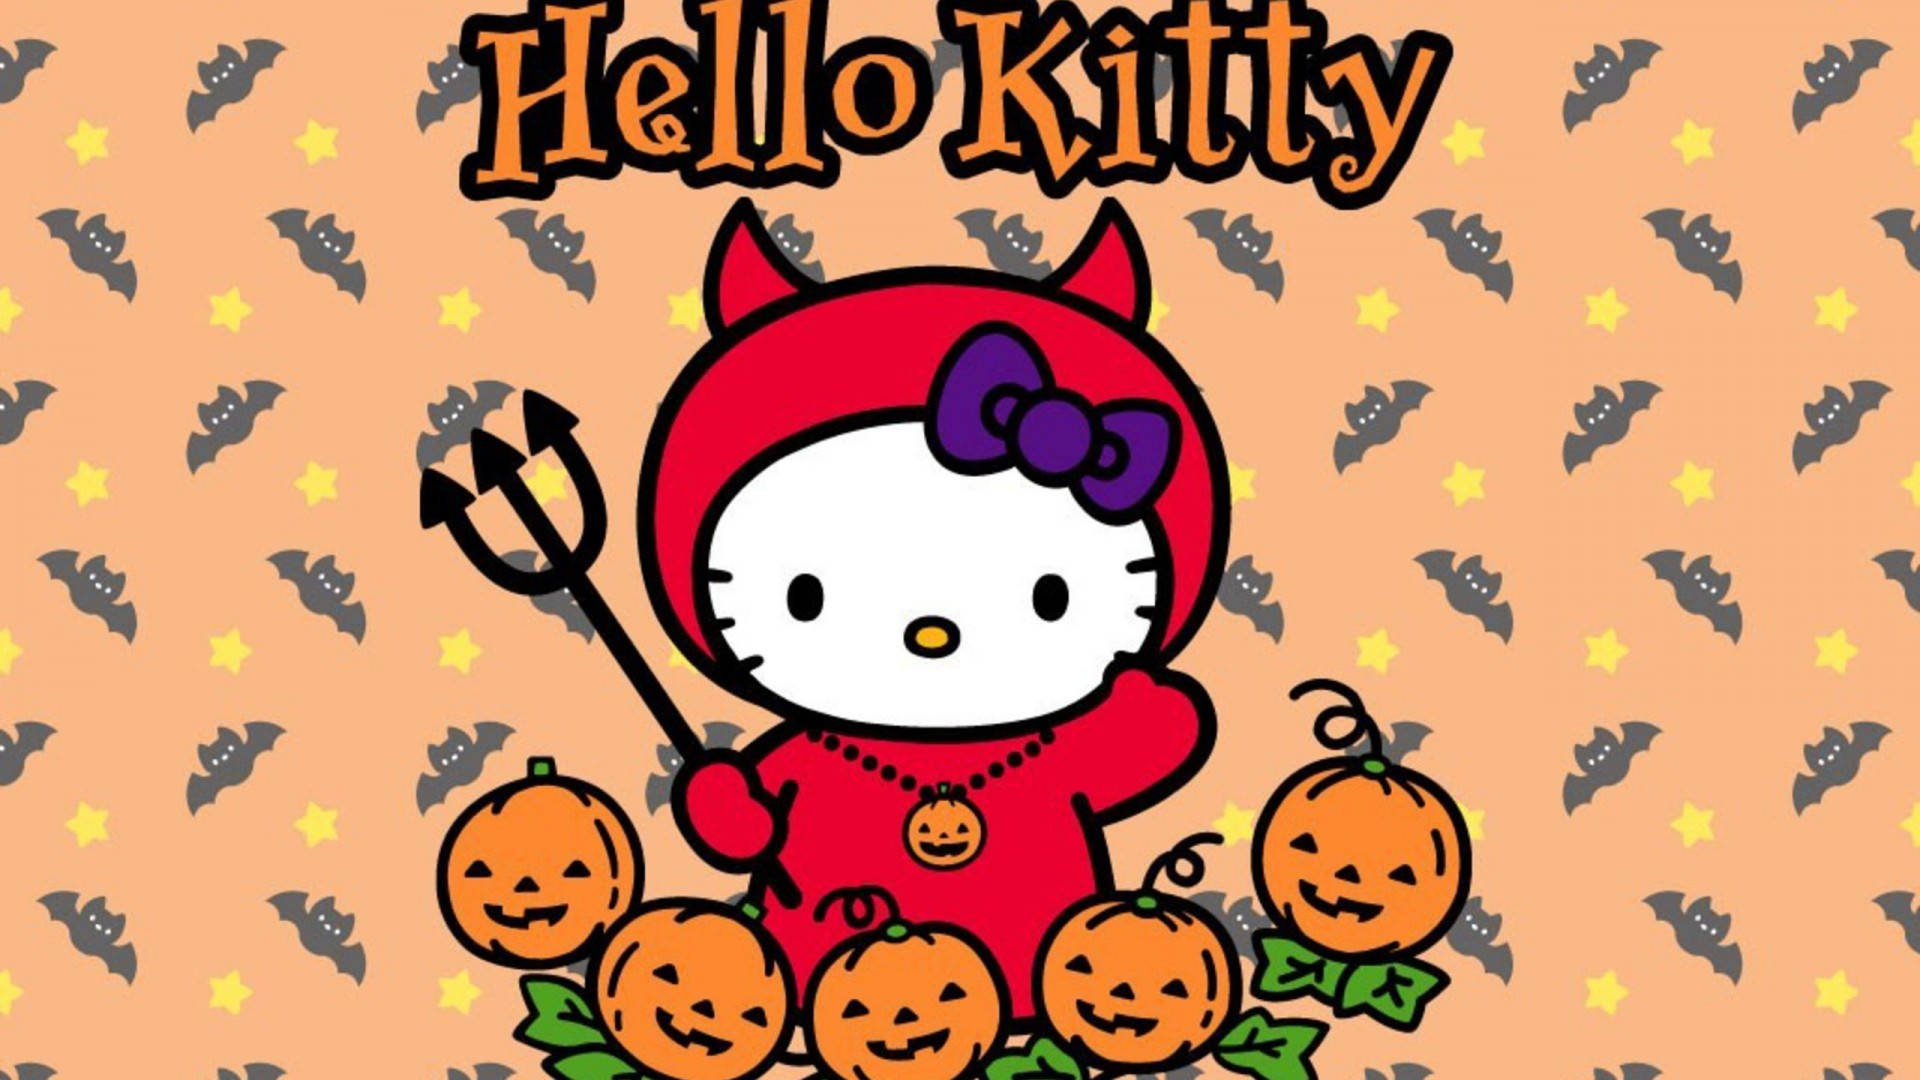 Hình nền Hello Kitty lễ Halloween sẽ đem lại cho bạn nhiều giây phút thư giãn và cảm giác thú vị. Với các hình ảnh màu đen, trắng, cam vàng huyền bí kết hợp với chú mèo xinh xắn, đây là một lựa chọn tuyệt vời cho mùa Halloween.